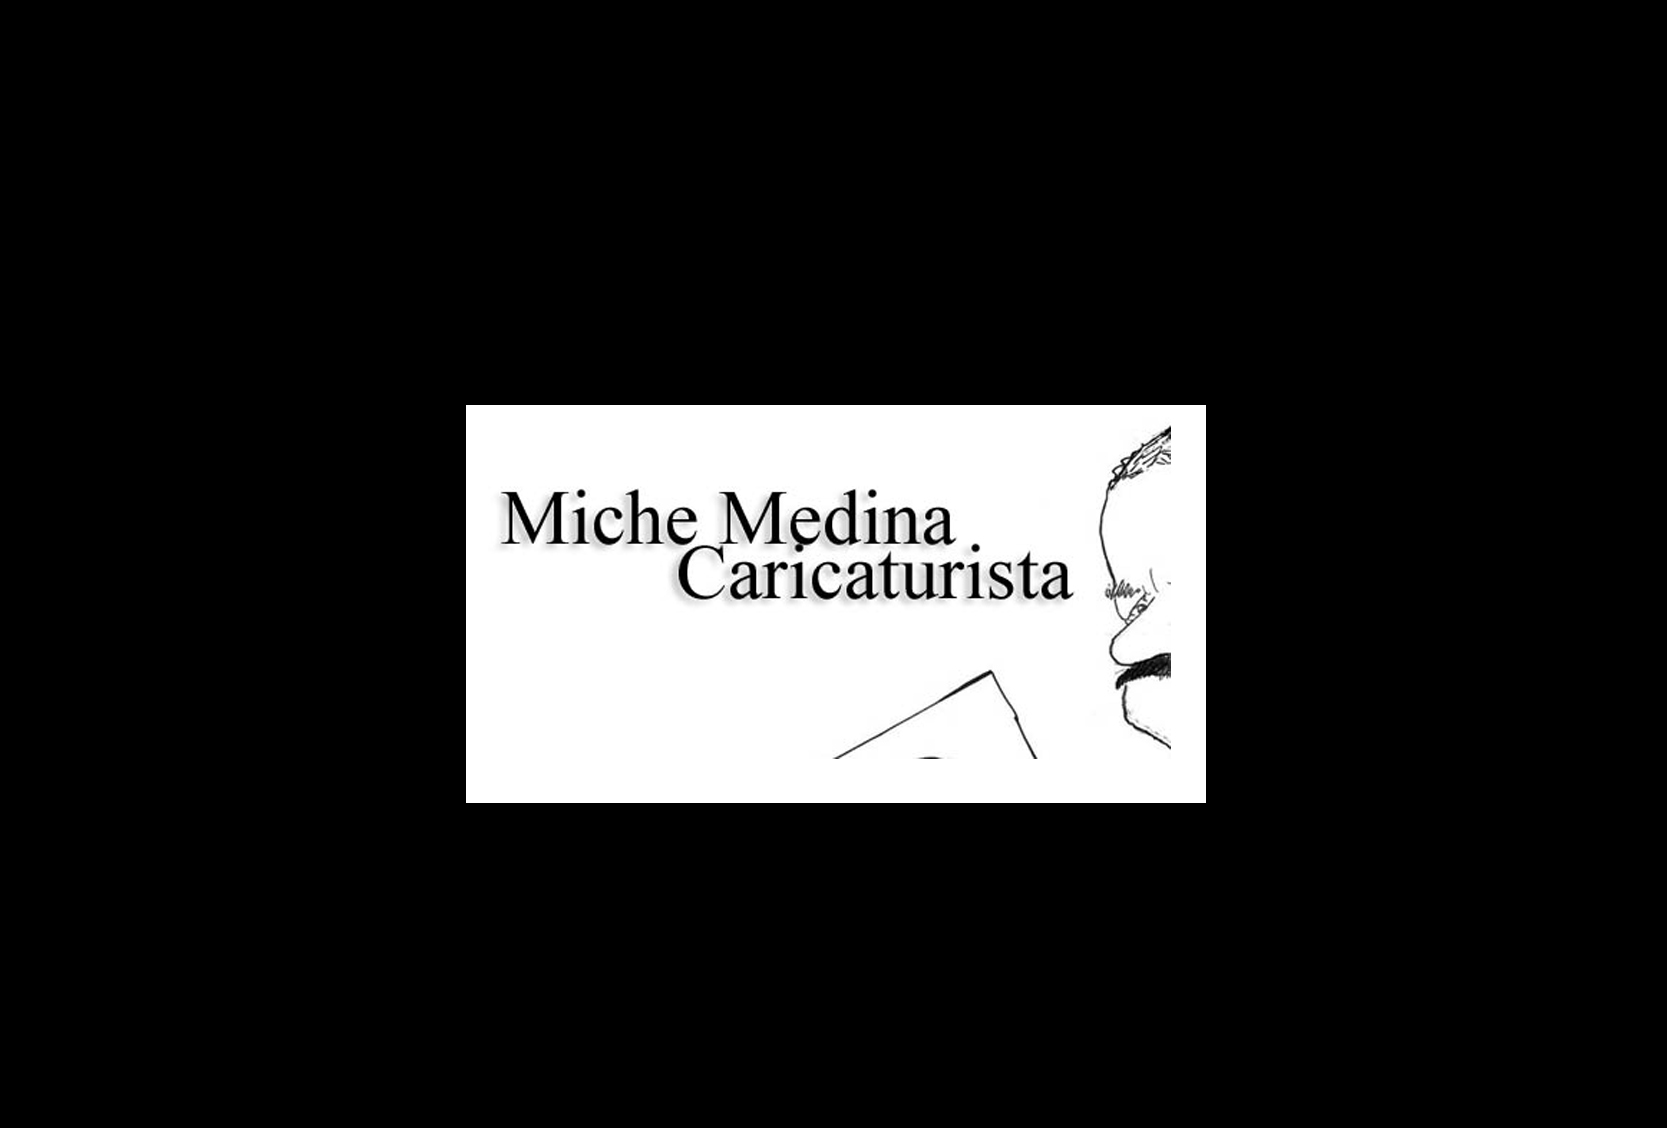 Miche Medina Caricaturista